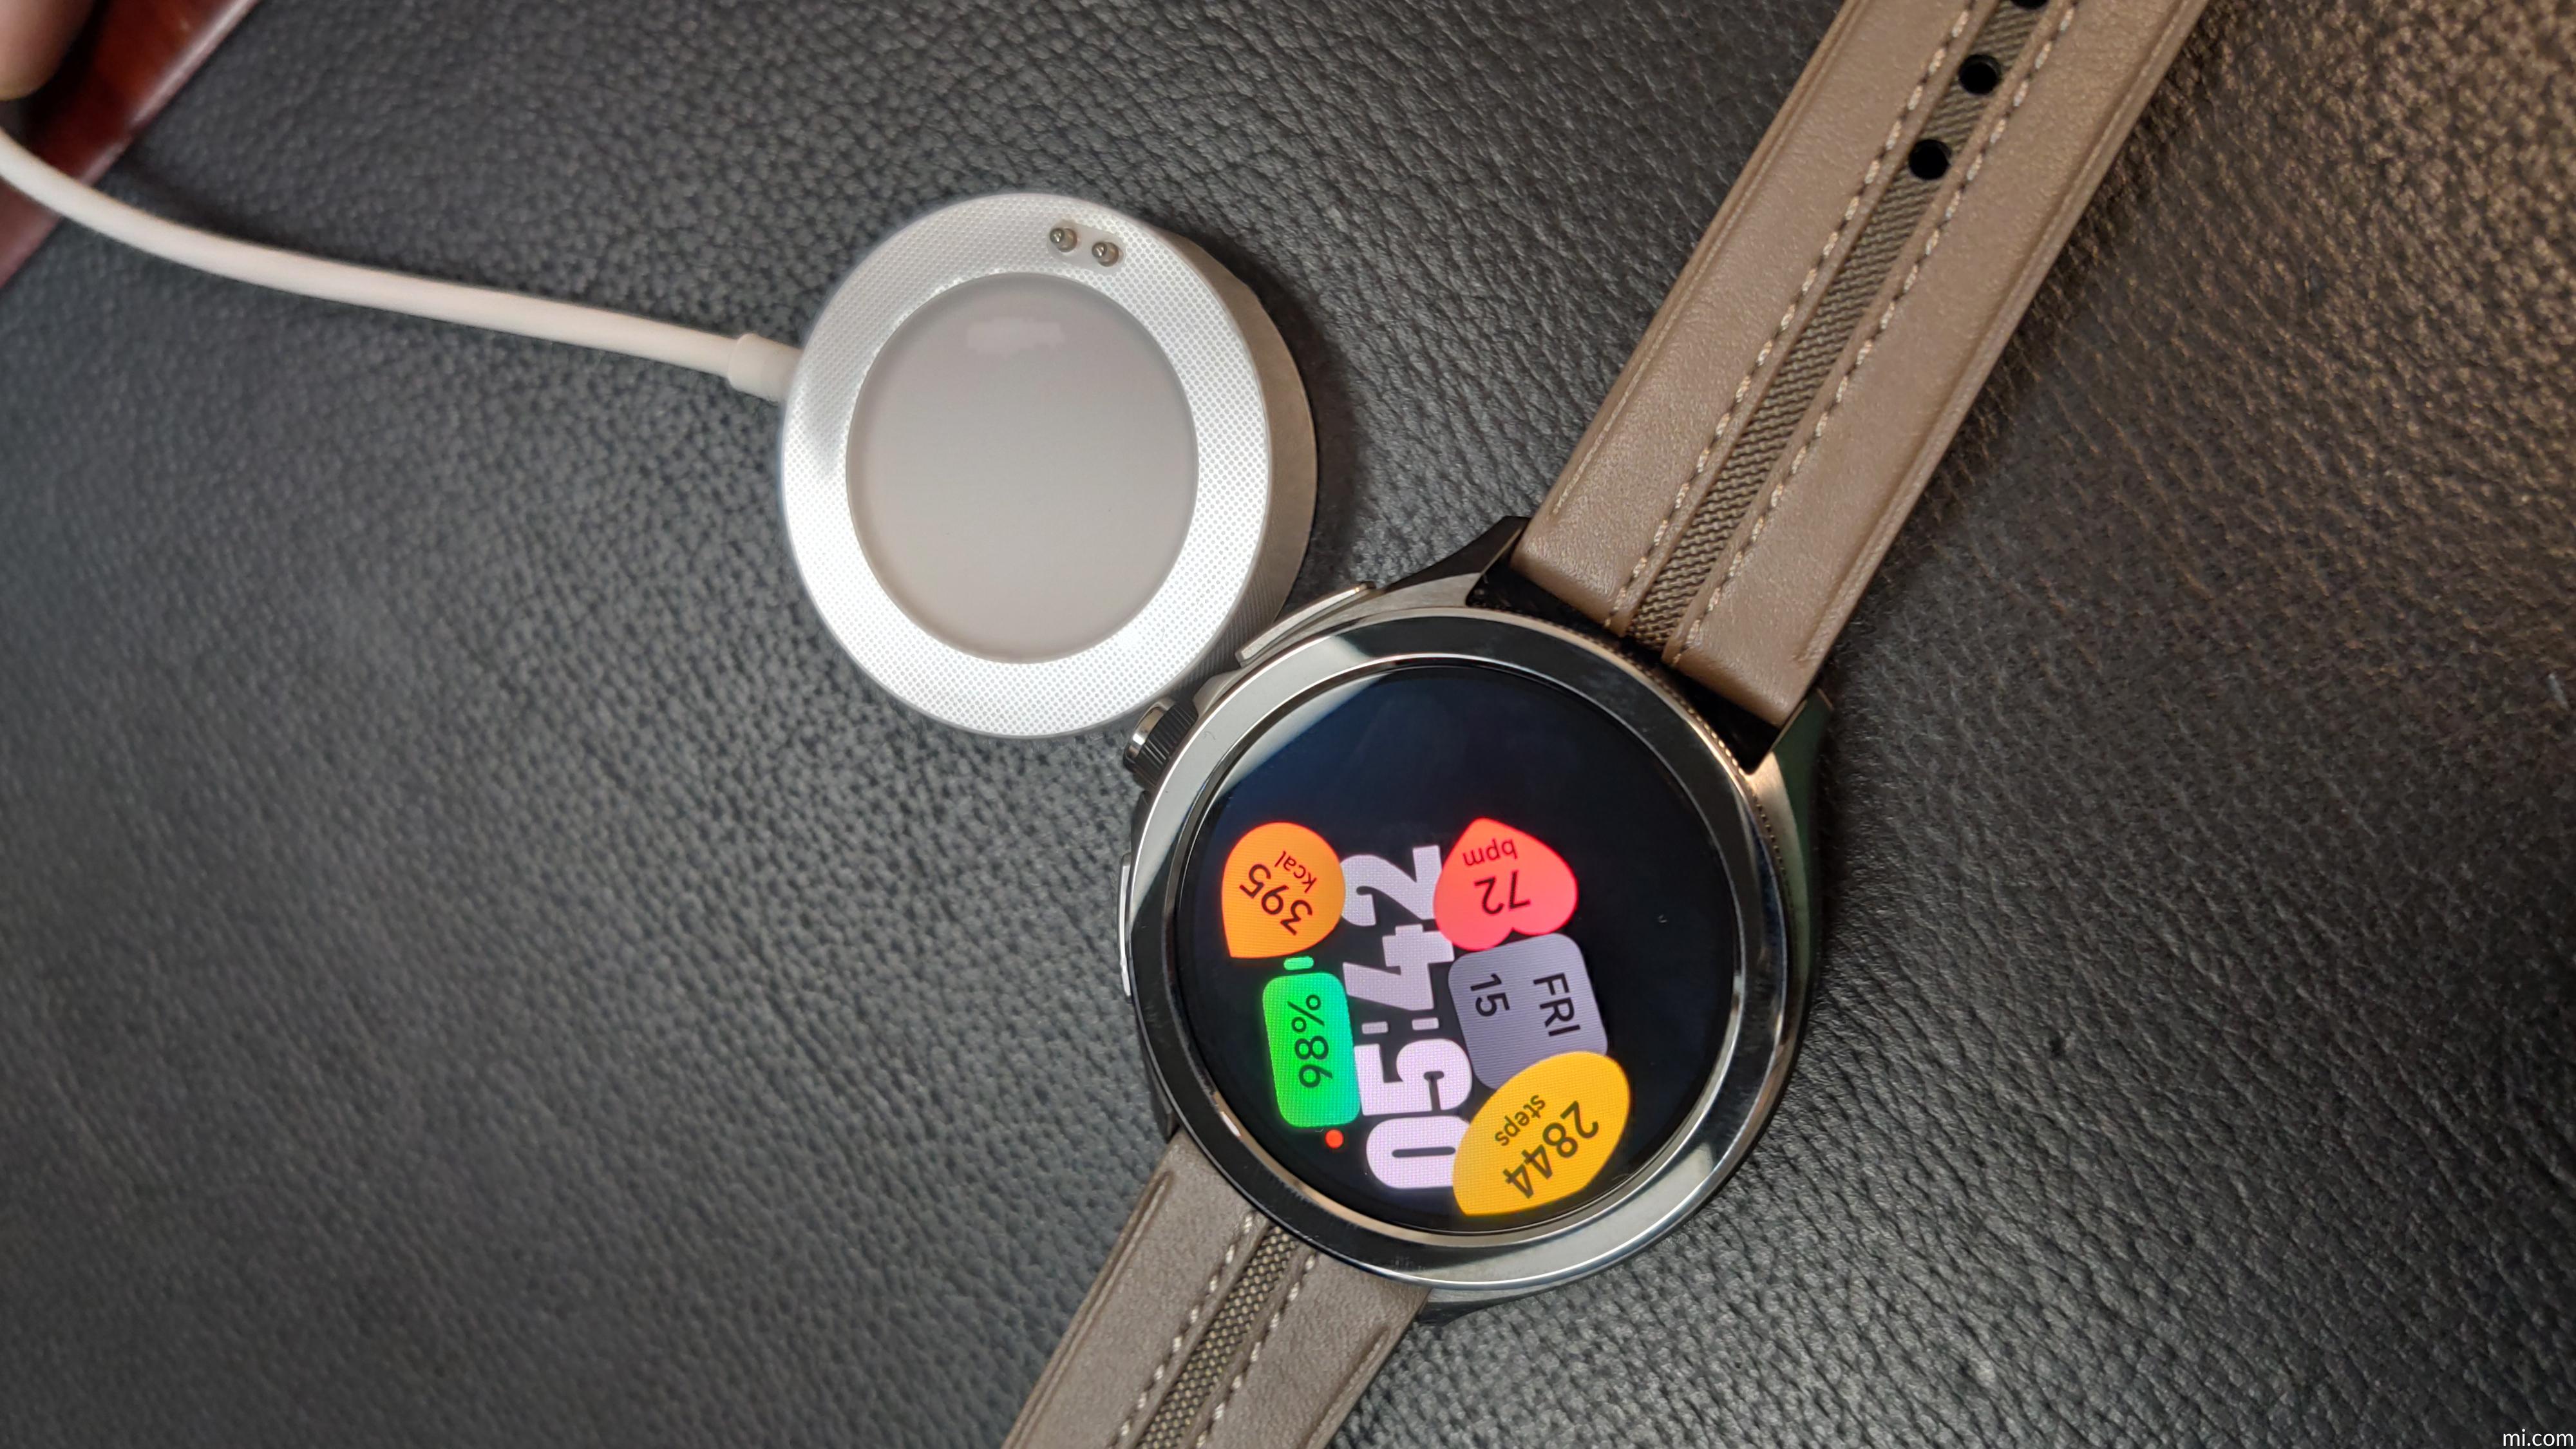 小米Xiaomi Watch 2 Pro (LTE) 價格,規格與評價- SOGI手機王